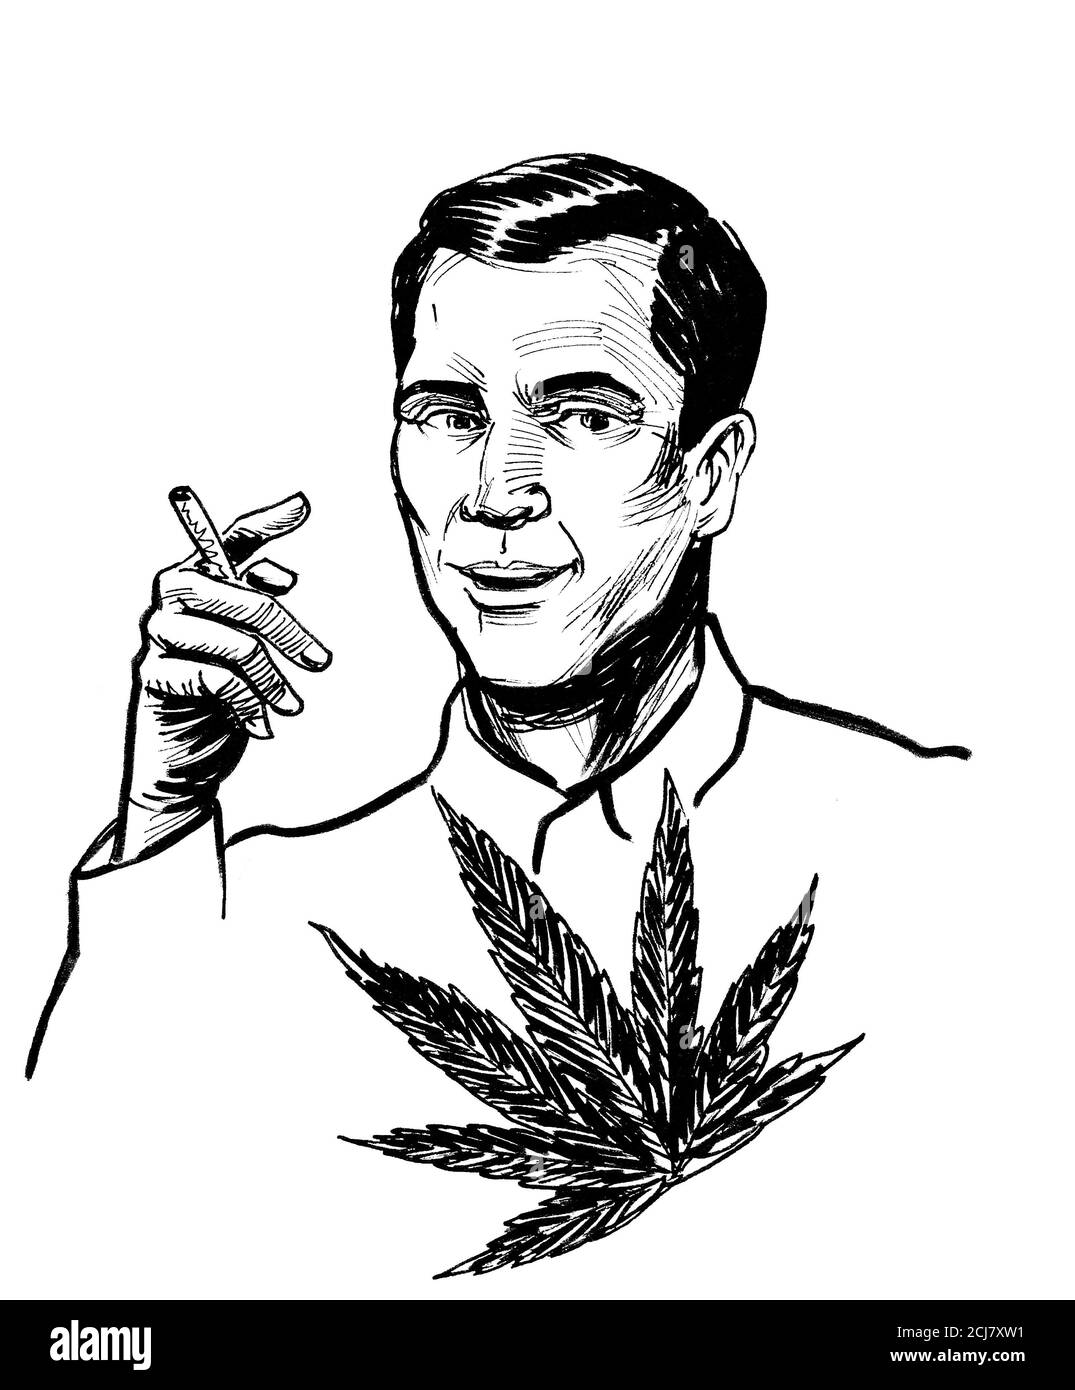 drawings of people smoking weed